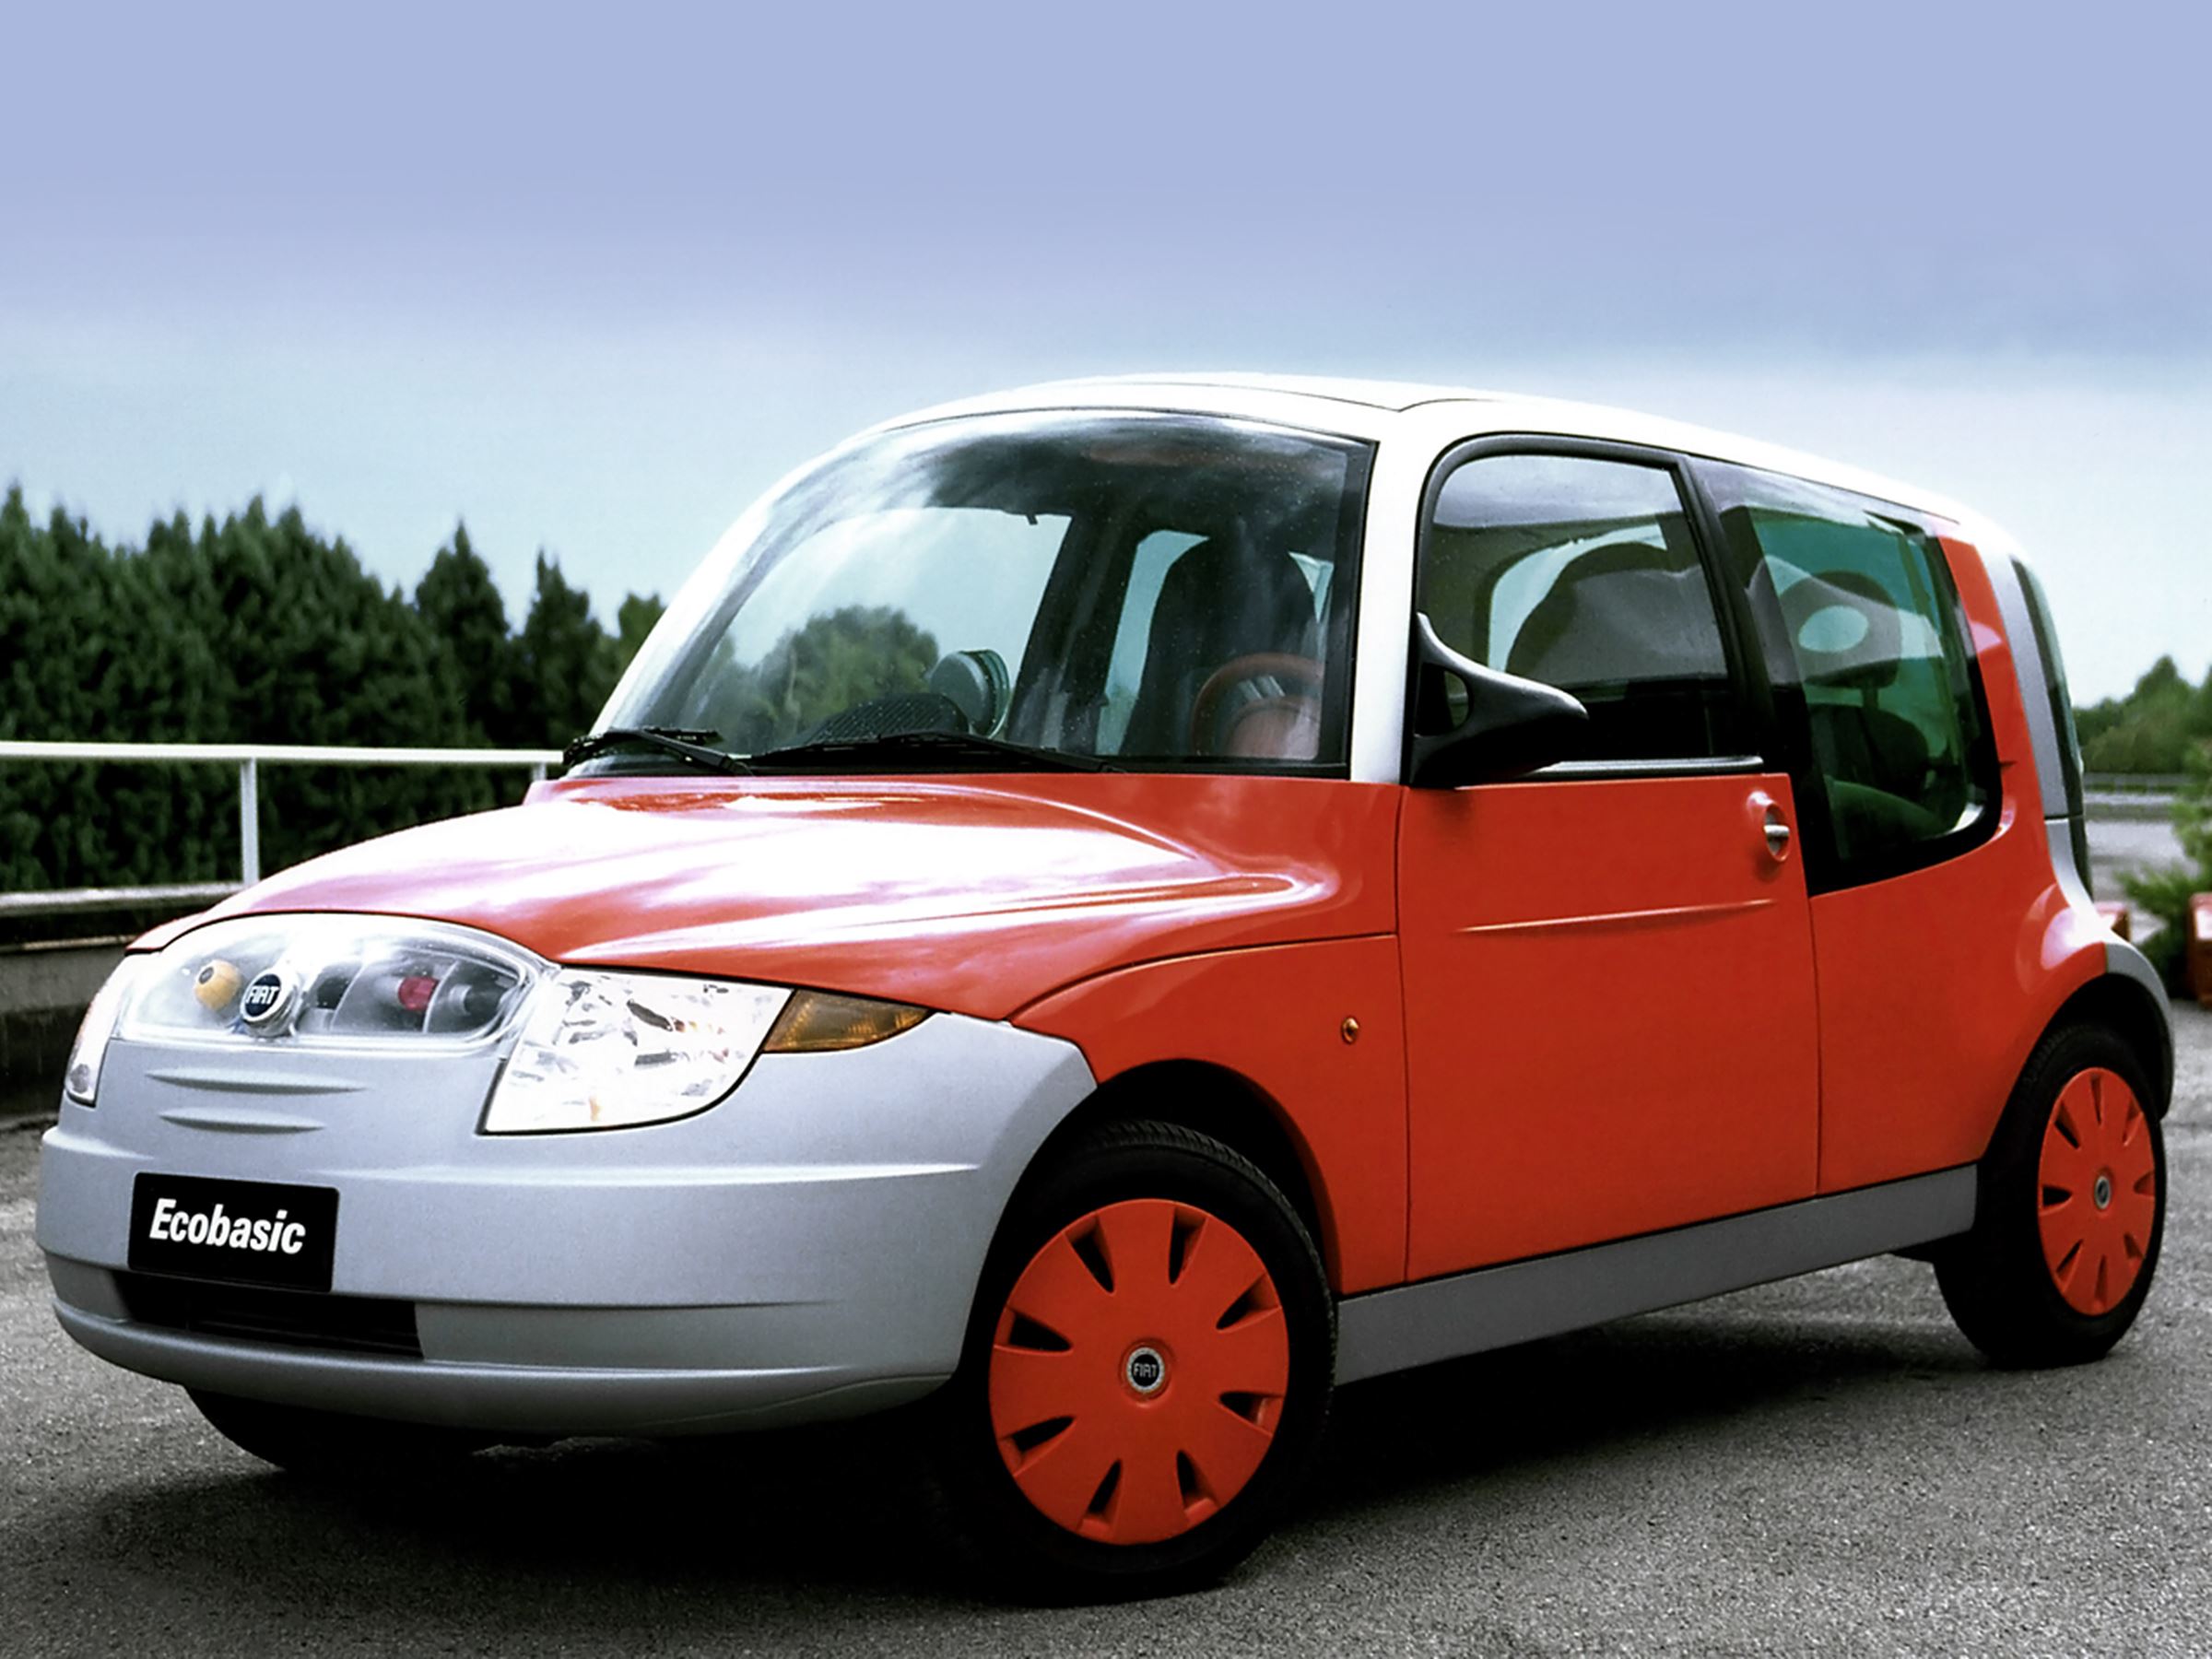 Prototypy z przeszłości Fiat Ecobasic z 2000 r. to